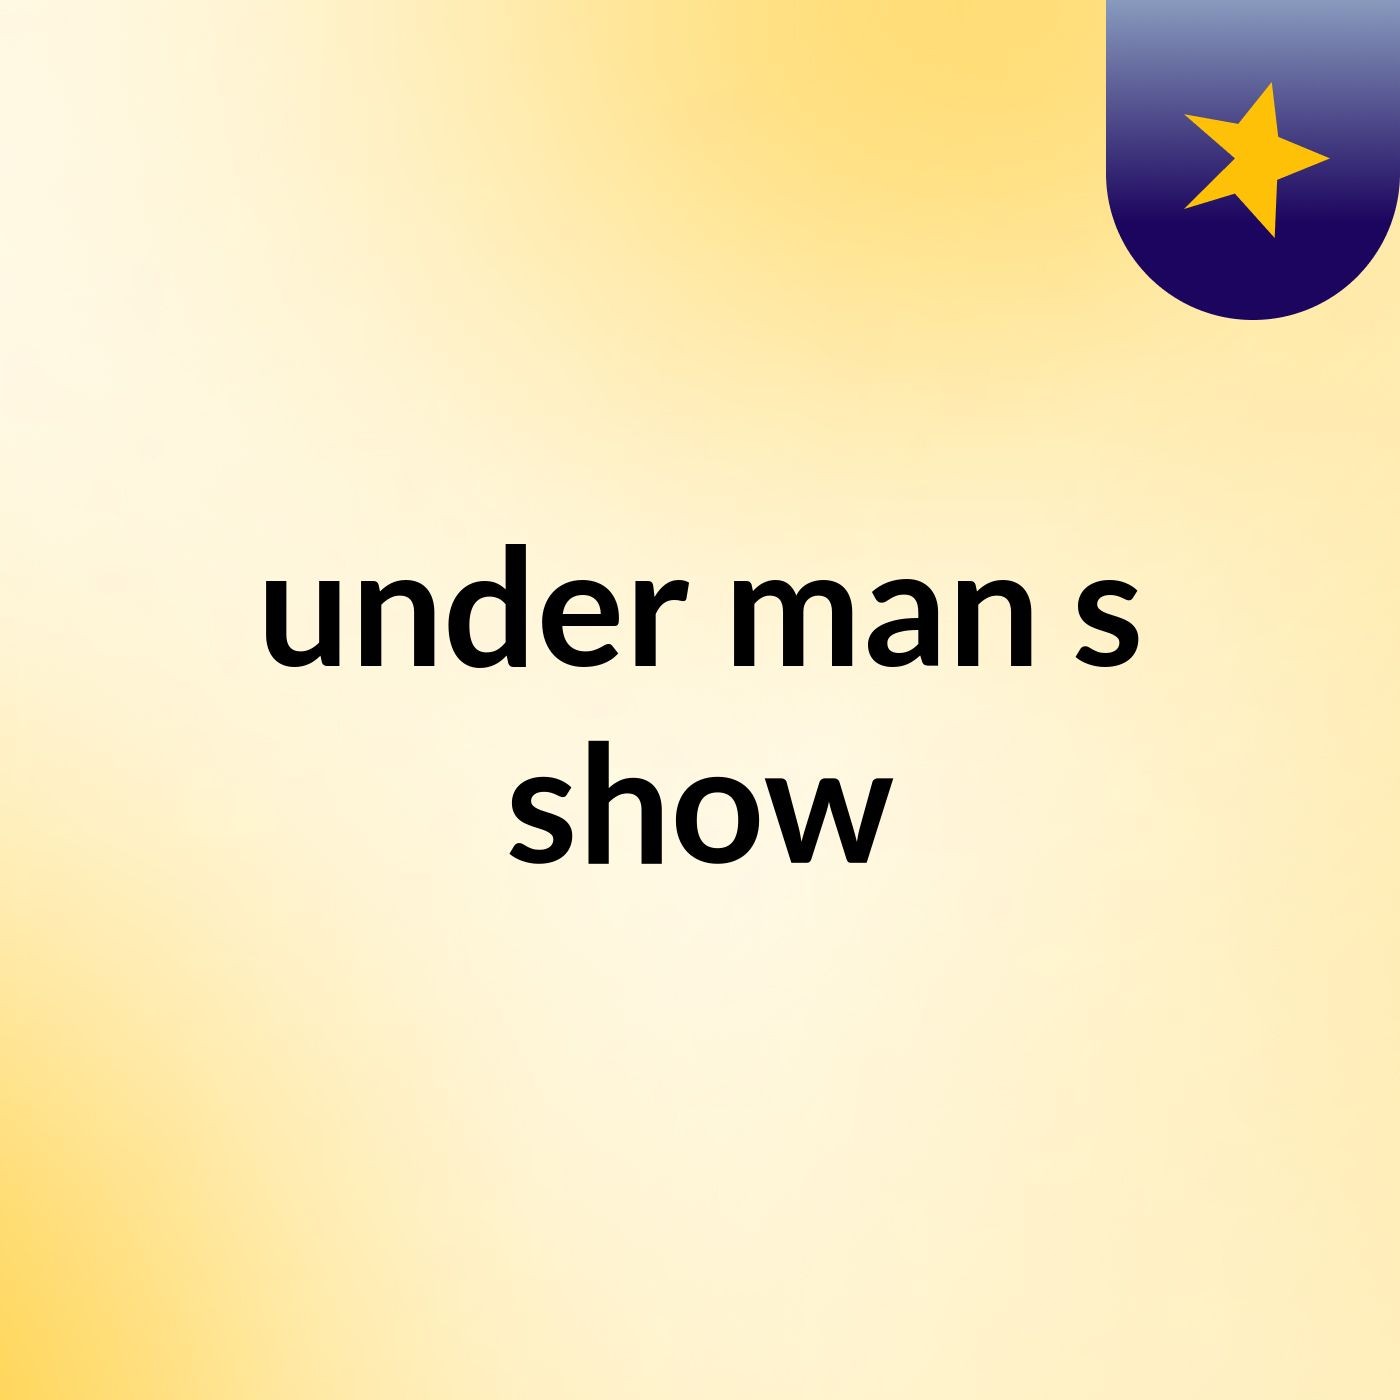 under man's show